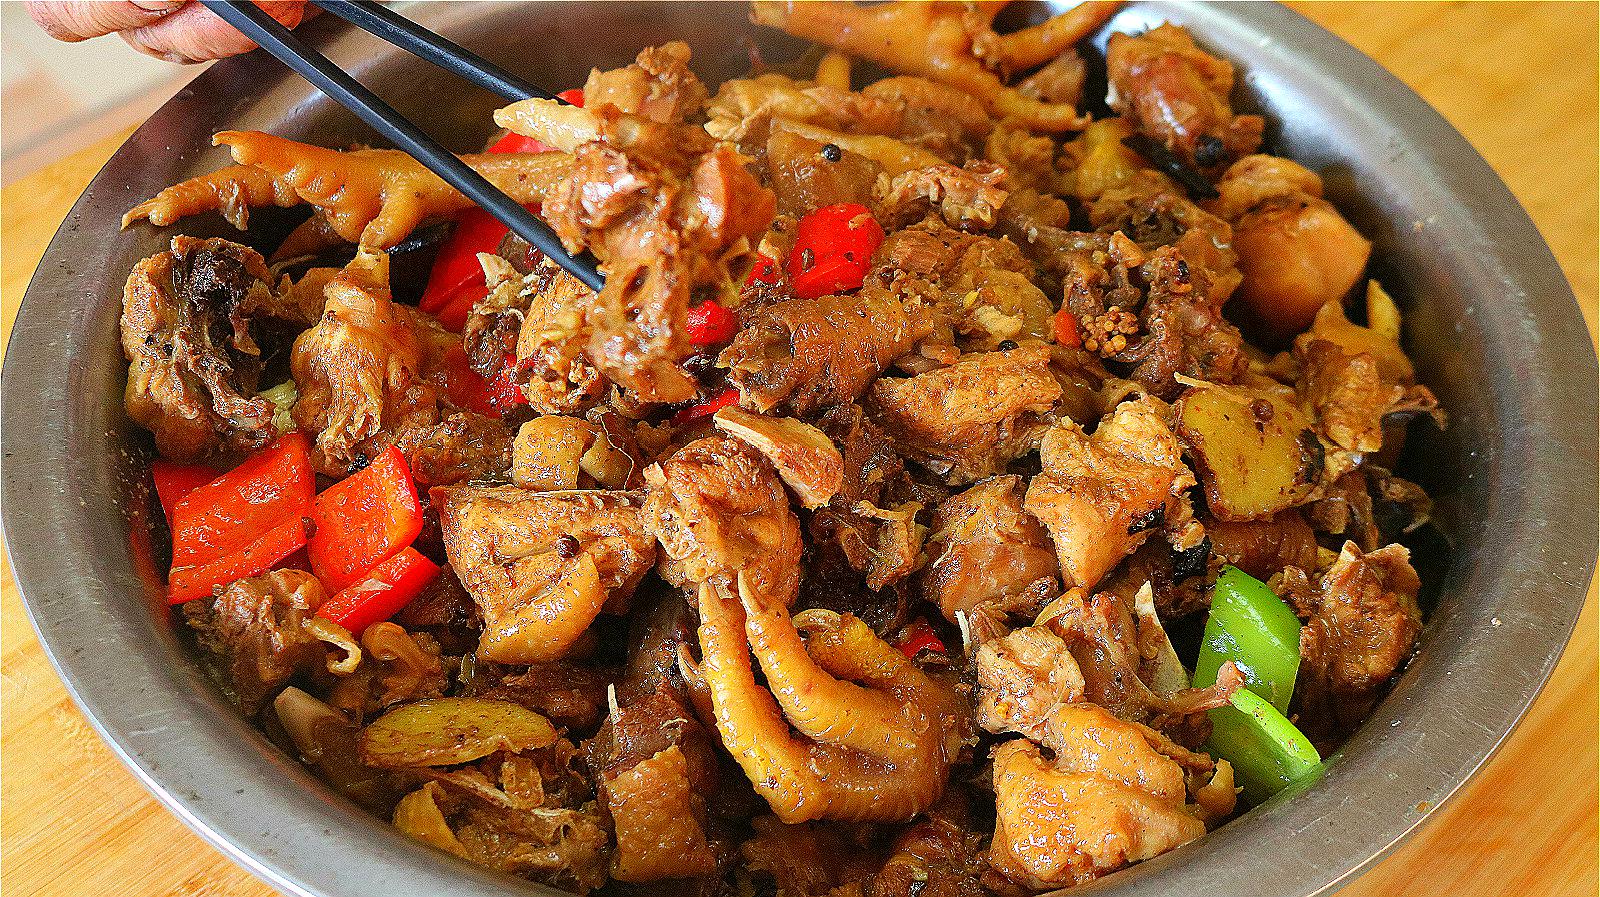 农村人最爱吃的铁锅炖鸡,这做法真是绝了,色香味俱全,看饿了